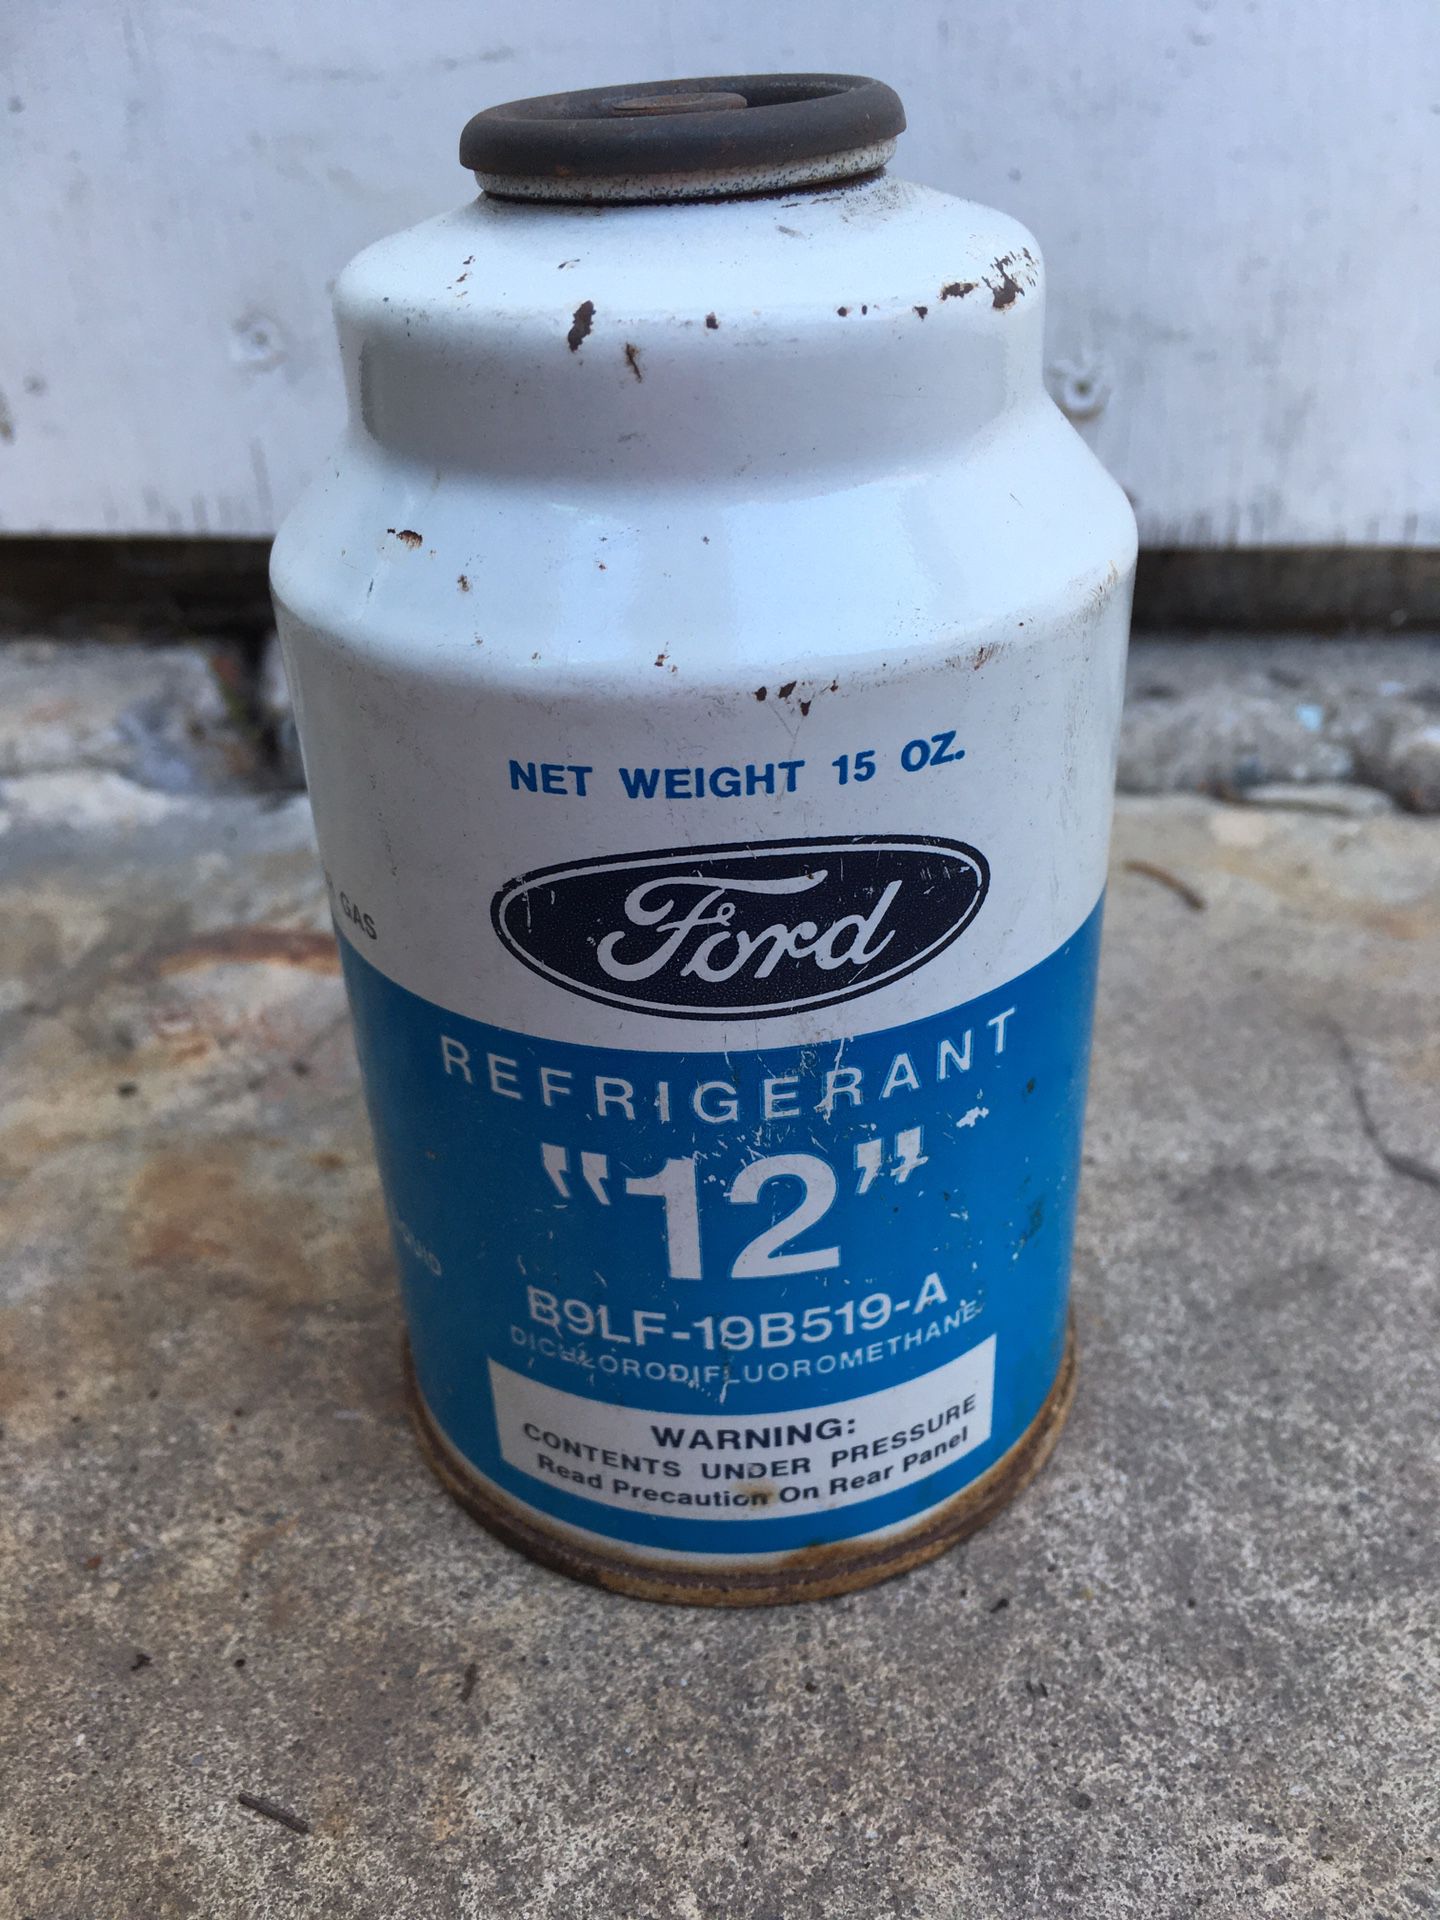 R12 refrigerant 12 Freon Ford 15 oz can